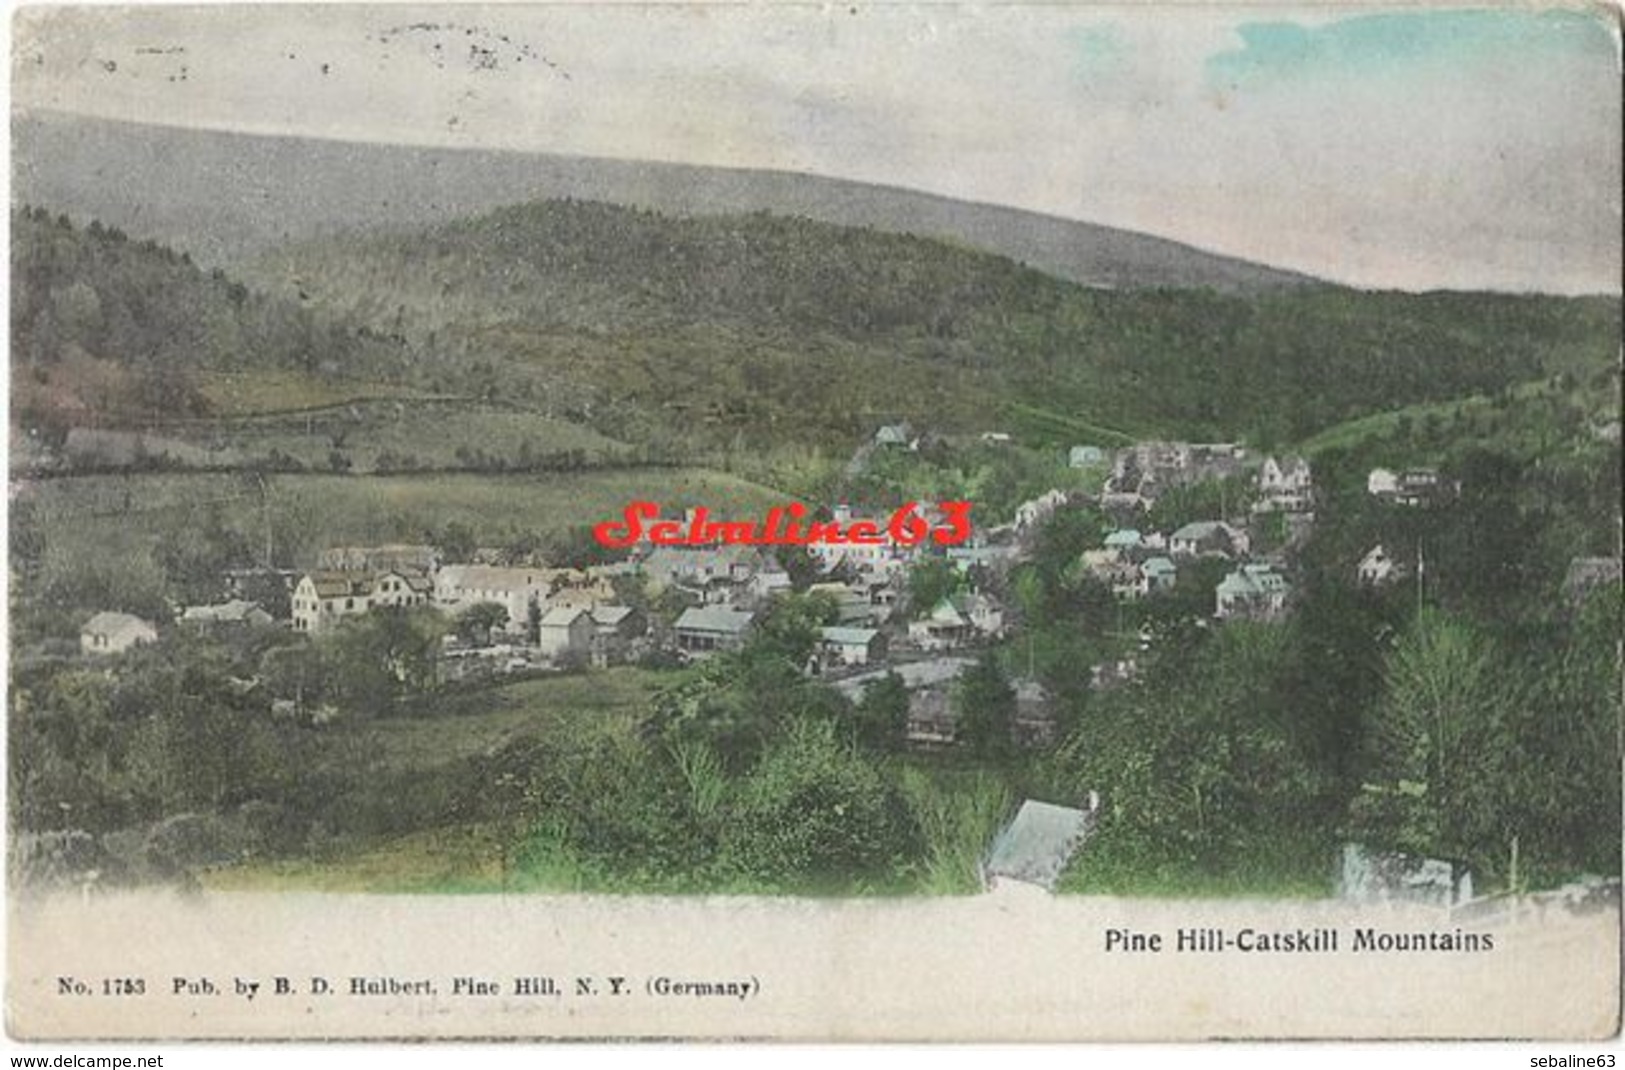 Pine Hill - Catskill Mountains - Catskills